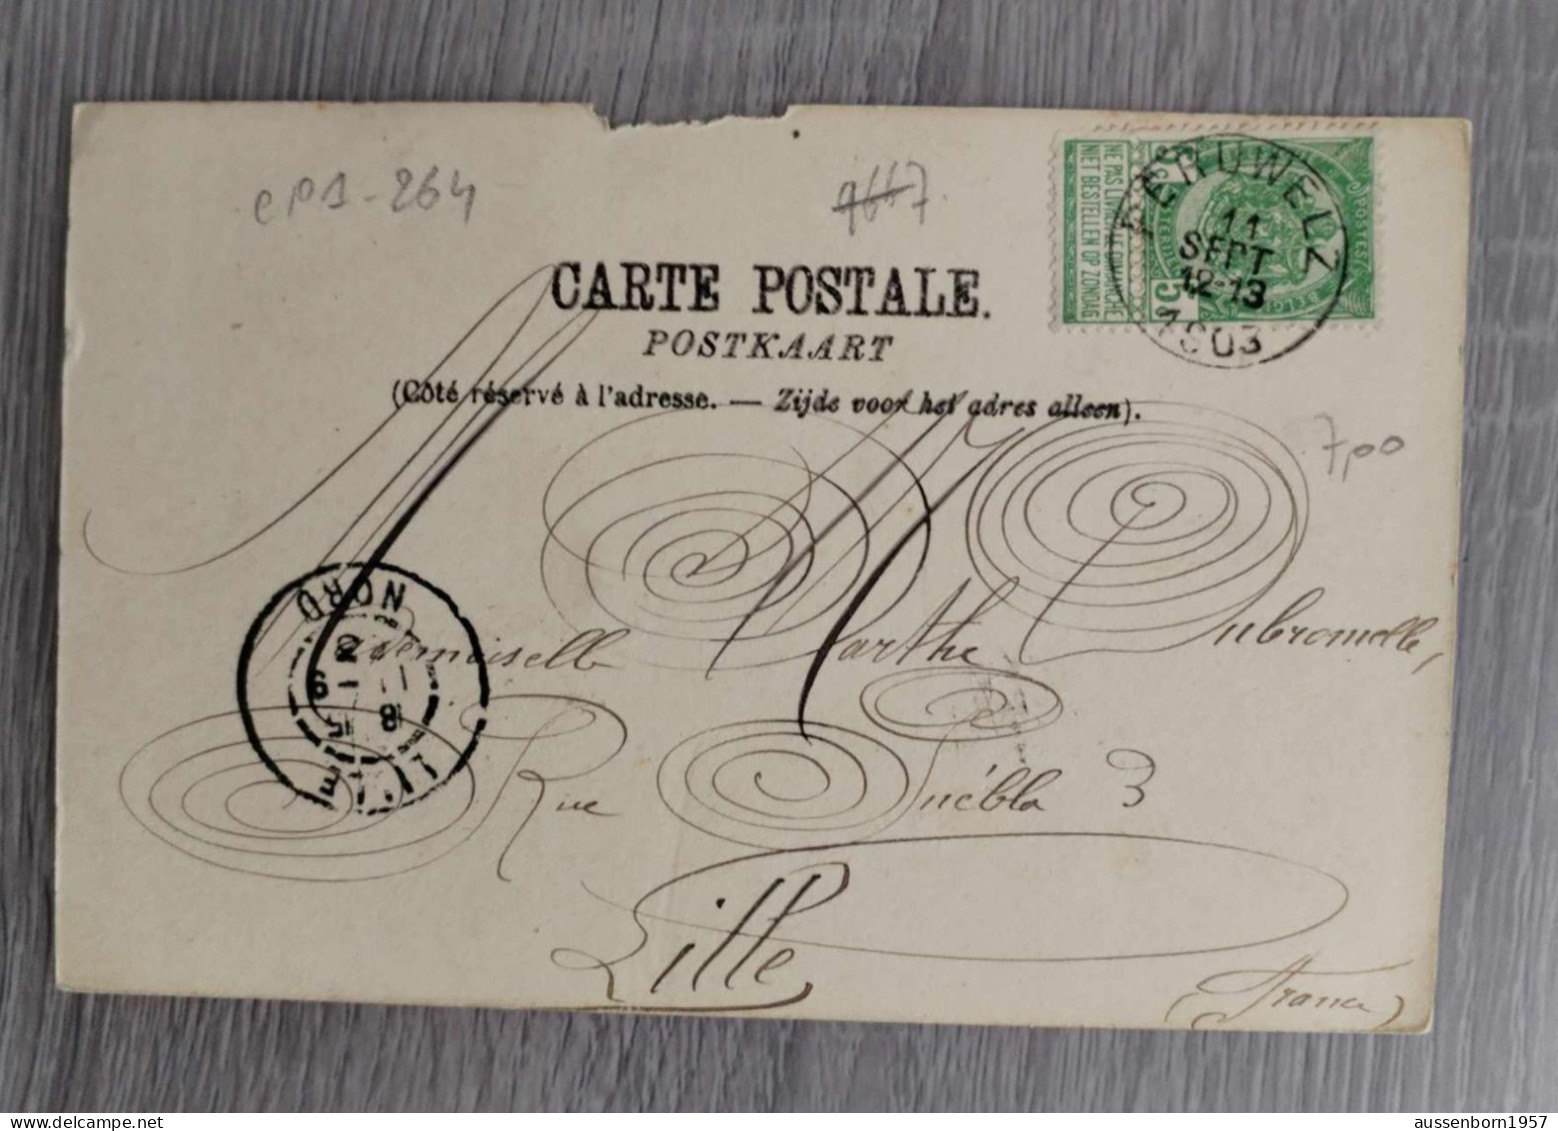 Peruwelz Bonsecours : lot de 6 cartes dos non divisé : 1900, 1903 et non écrites